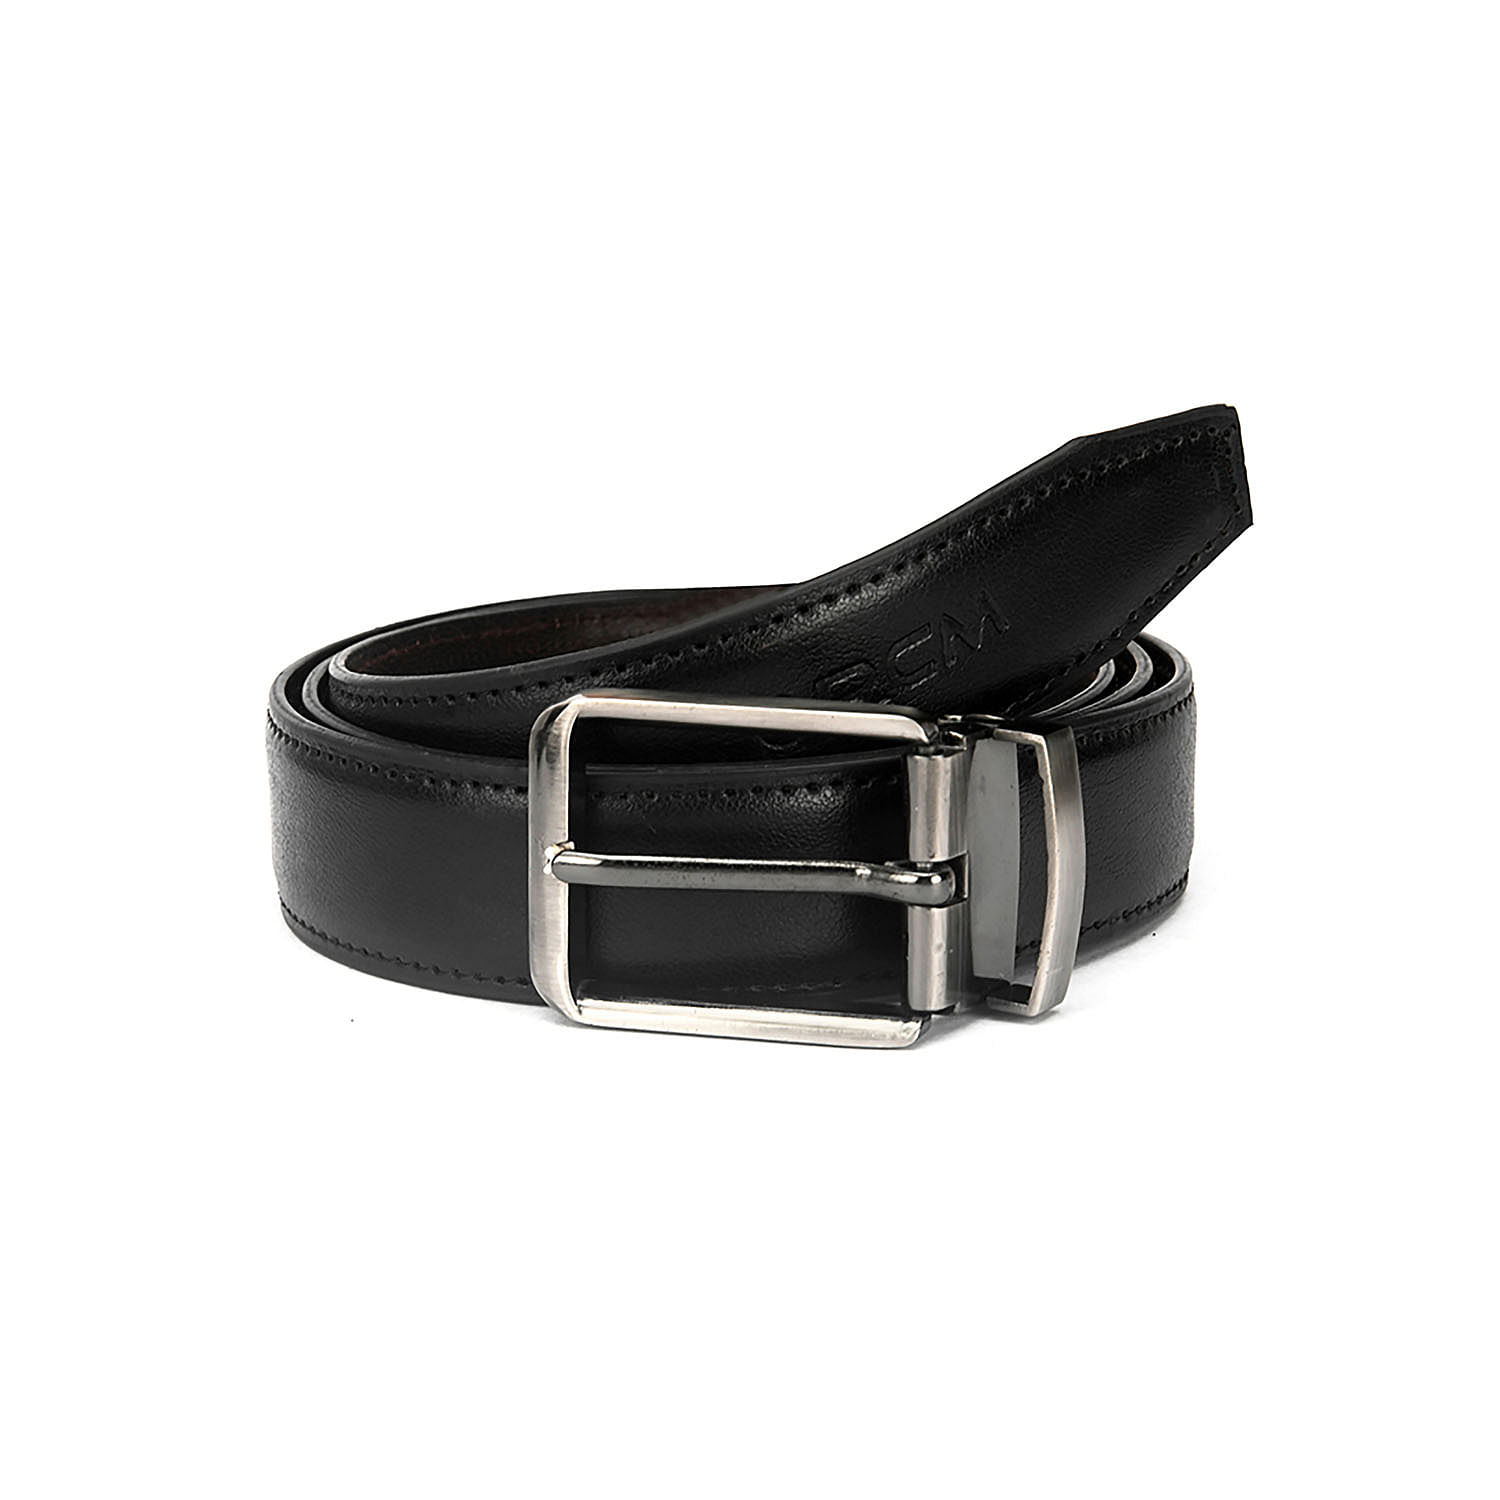 Men's Formal Belt with reversable Strap - FR-DB0001 - Black/Brown